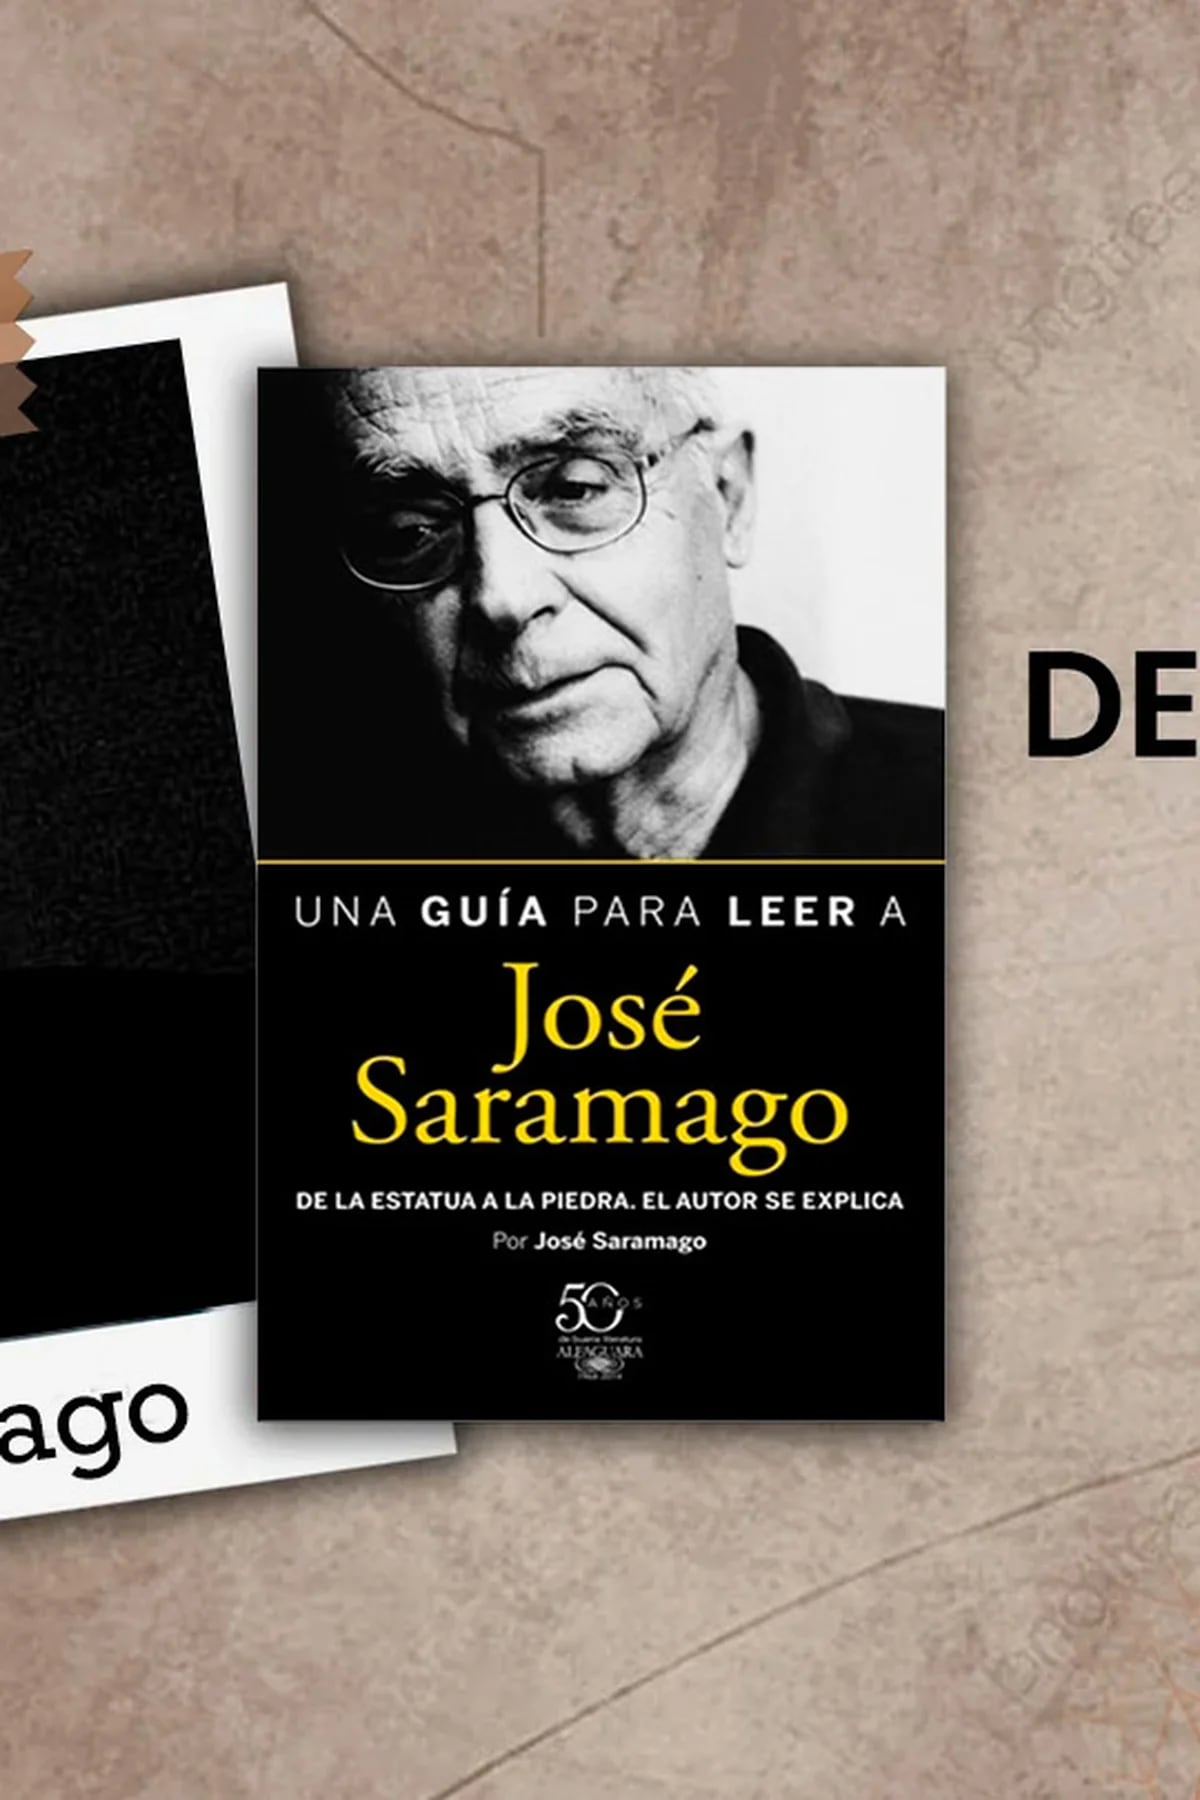 Biografia de José Saramago